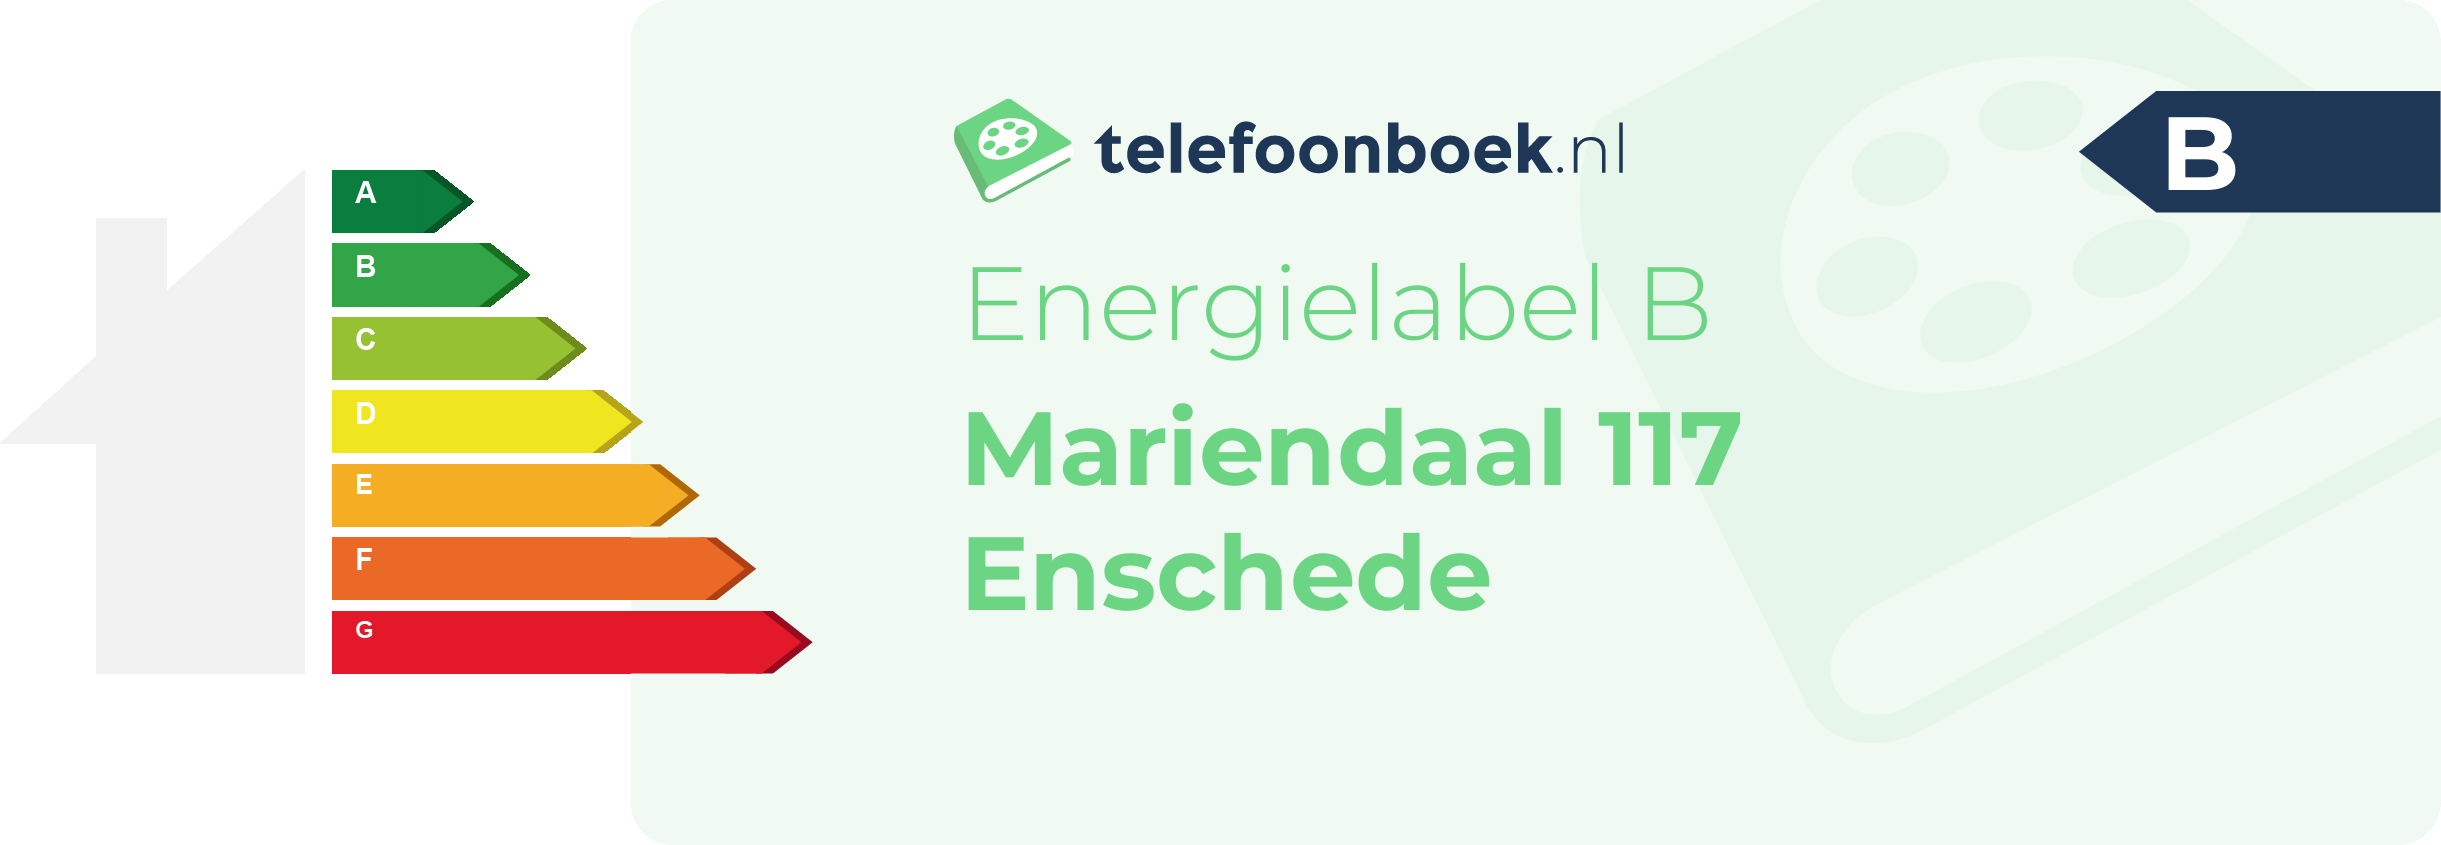 Energielabel Mariendaal 117 Enschede